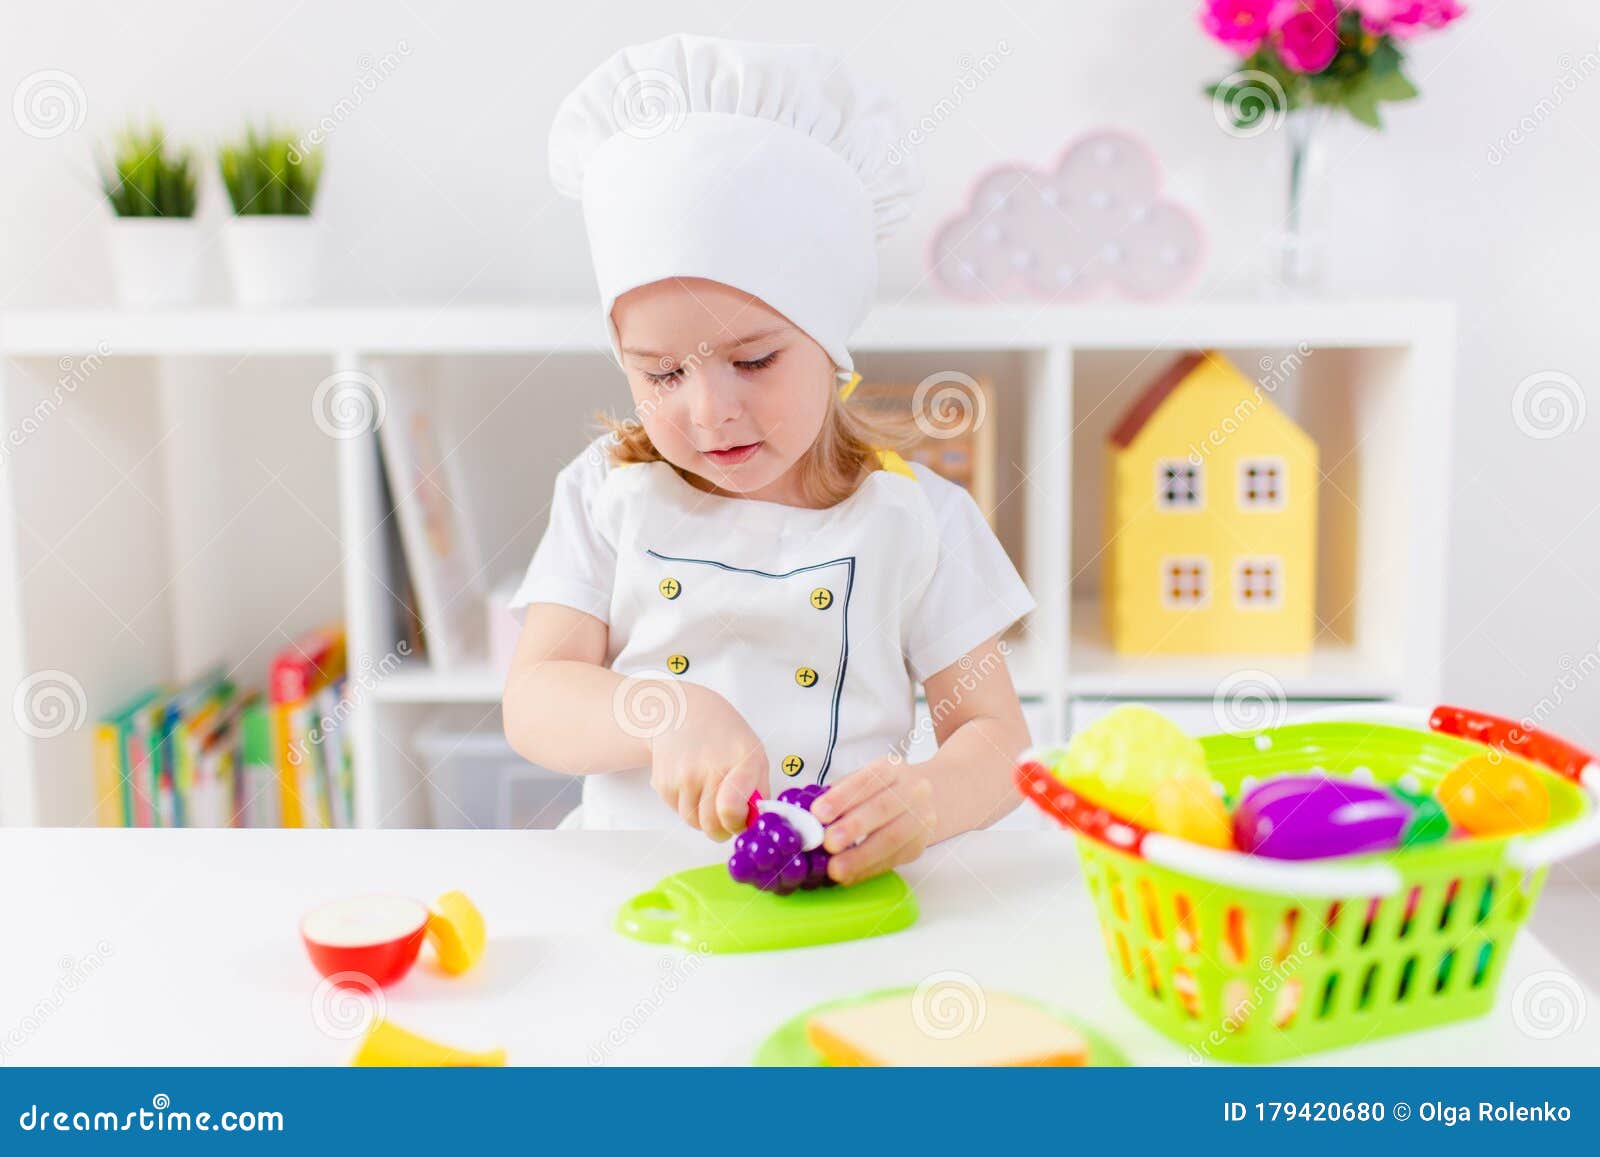 μικρή ξανθιά κοπέλα με λευκή στολή μάγειρας που παίζει με παιδικά φρούτα  και λαχανικά στο σπίτι στο νηπιαγωγείο ή στο νηπιαγωγείο. Στοκ Εικόνες -  εικόνα από childhood, childcare: 179420680